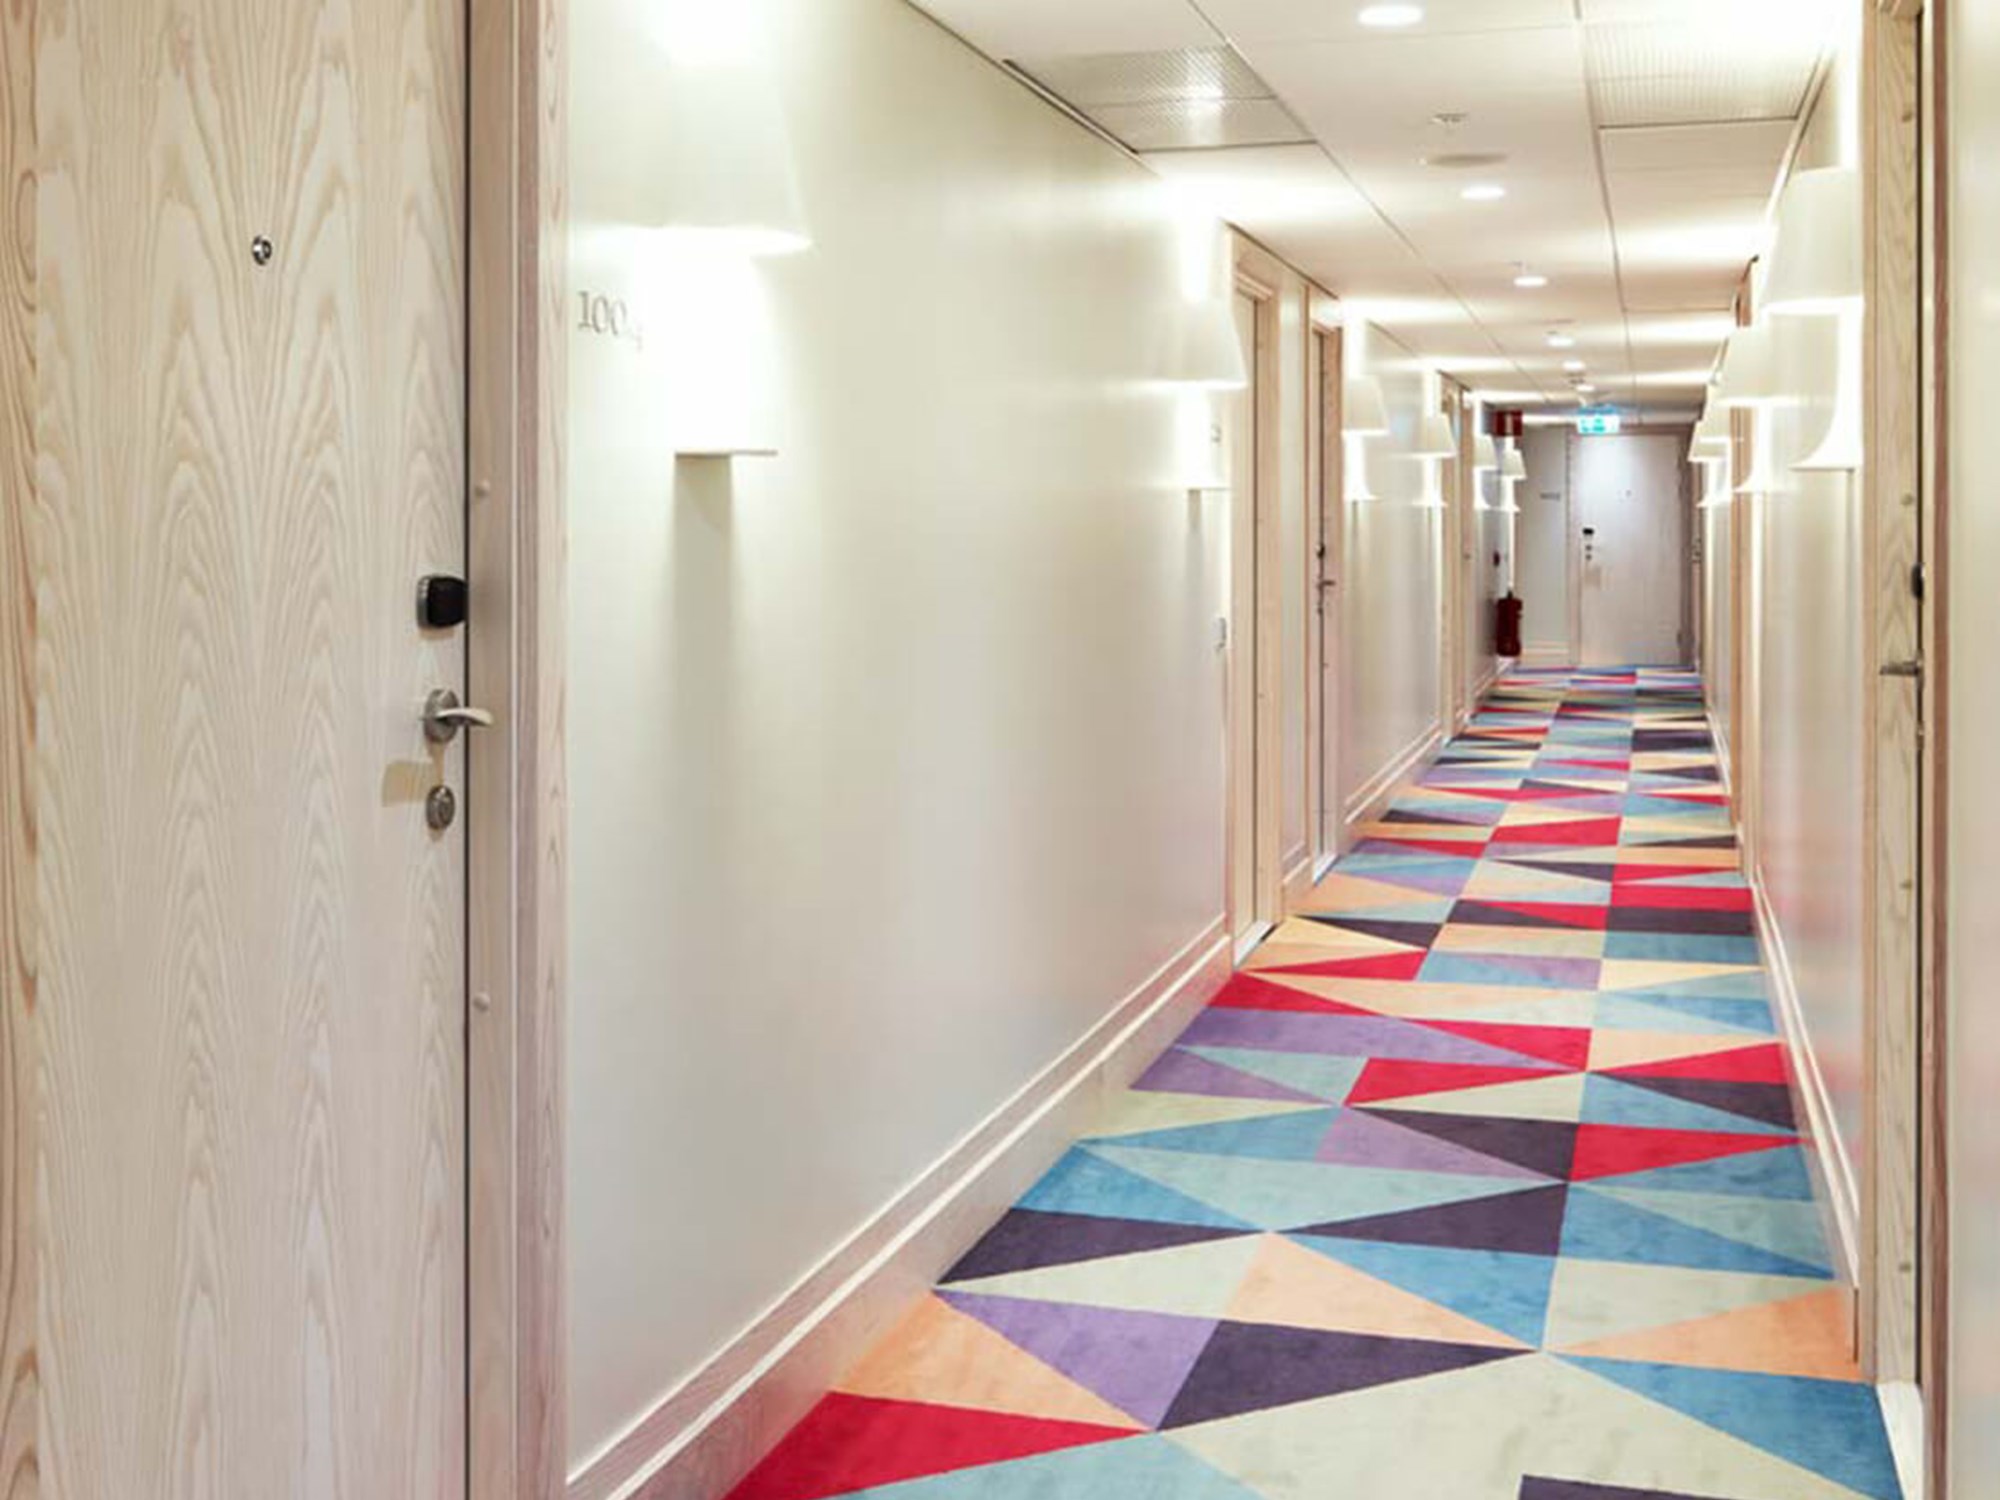 Hotellkorridor med färgglad matta och rumsdörrar